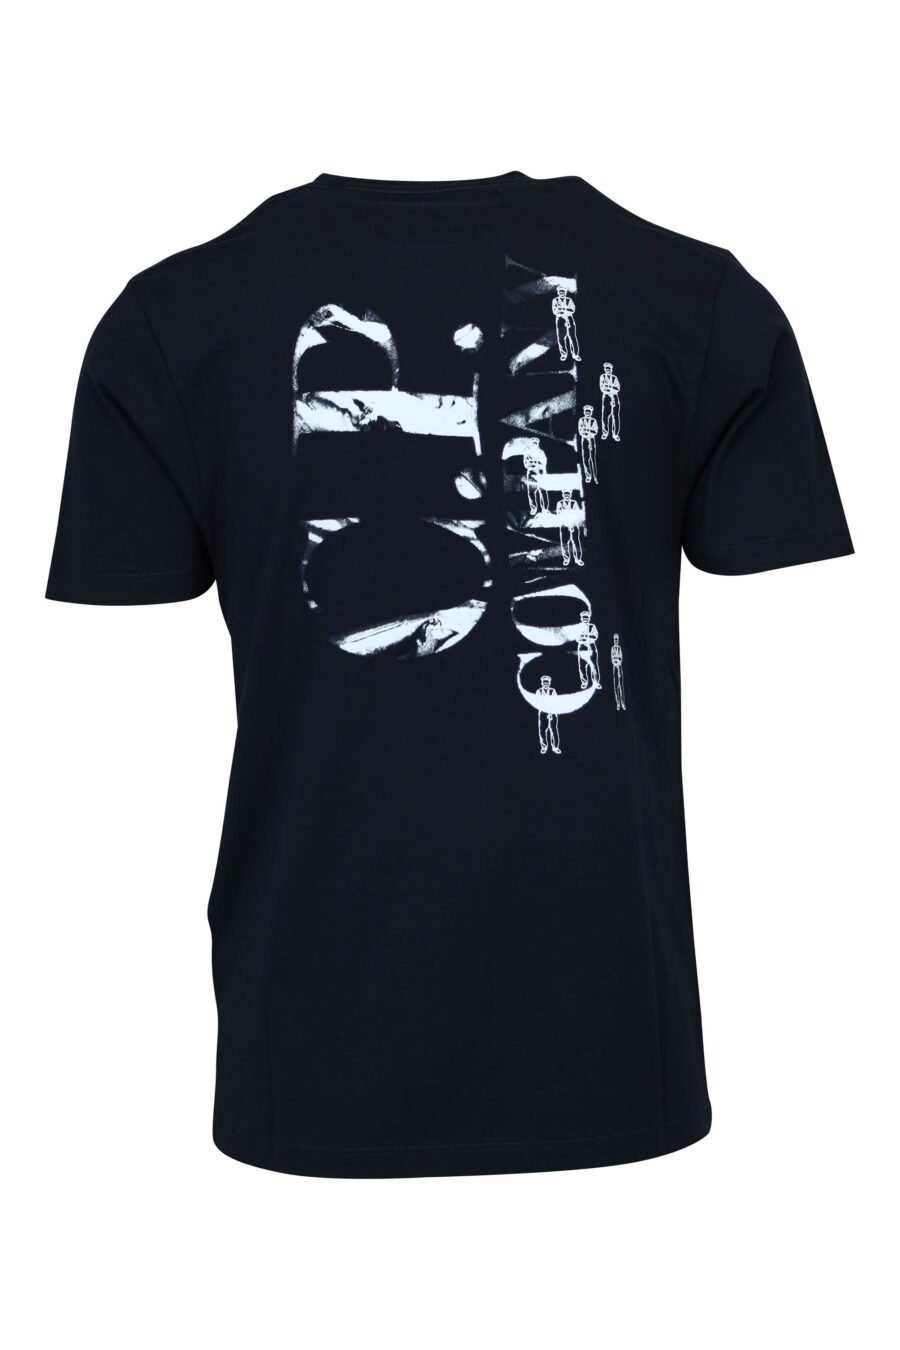 Dunkelblaues T-Shirt mit Minilogue "cp" mit zentrierten Matrosen - 7620943764710 1